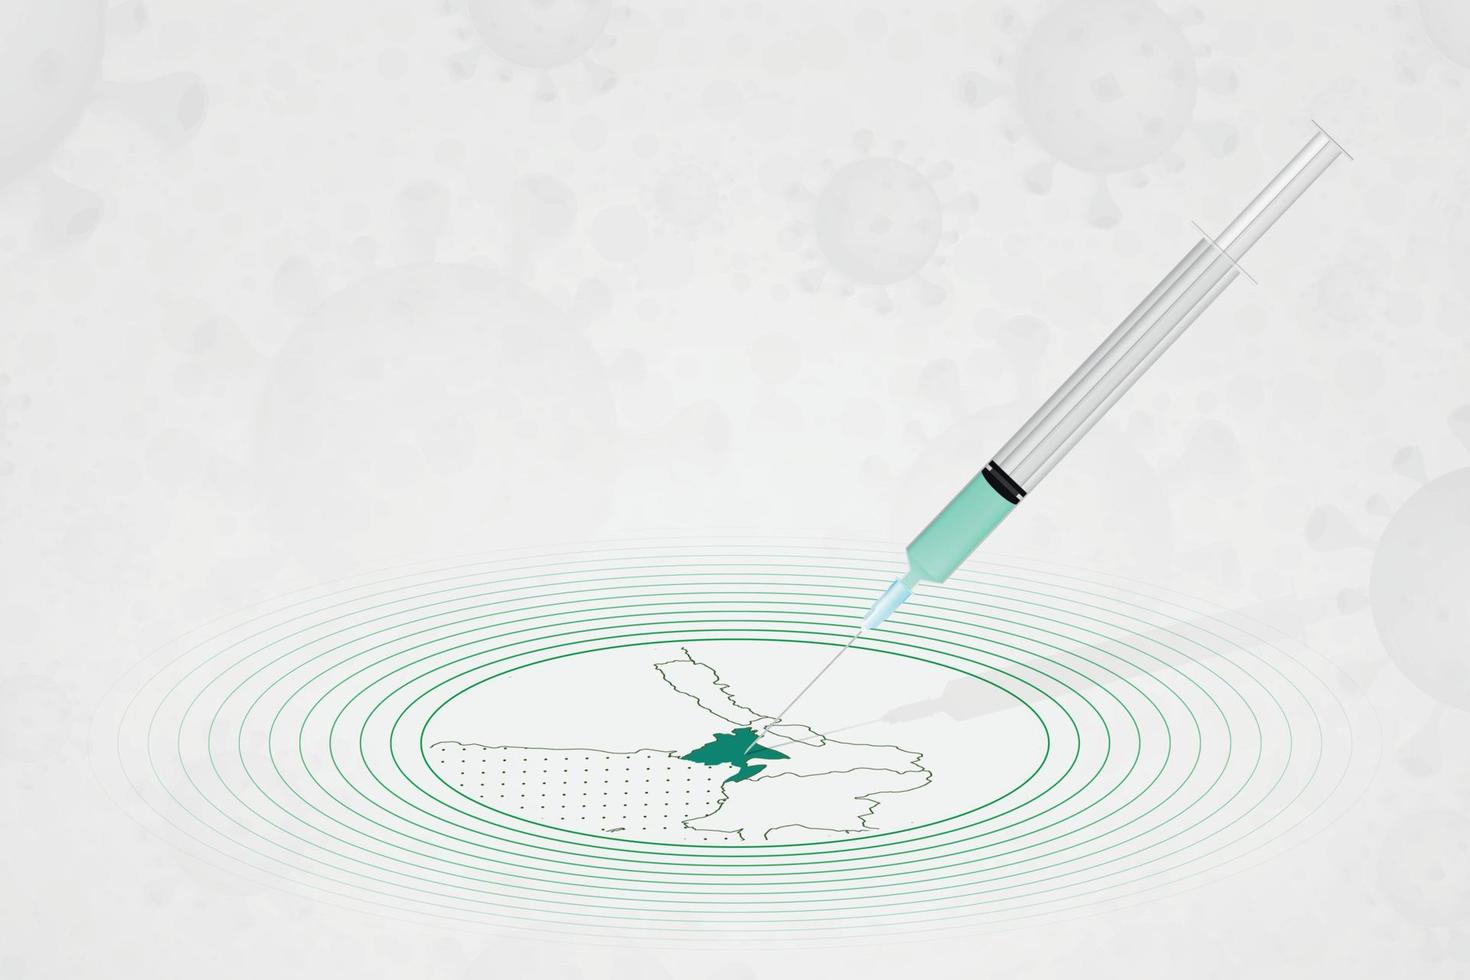 concept de vaccination au bangladesh, injection de vaccin sur la carte du bangladesh. vaccin et vaccination contre le coronavirus, covid-19. vecteur